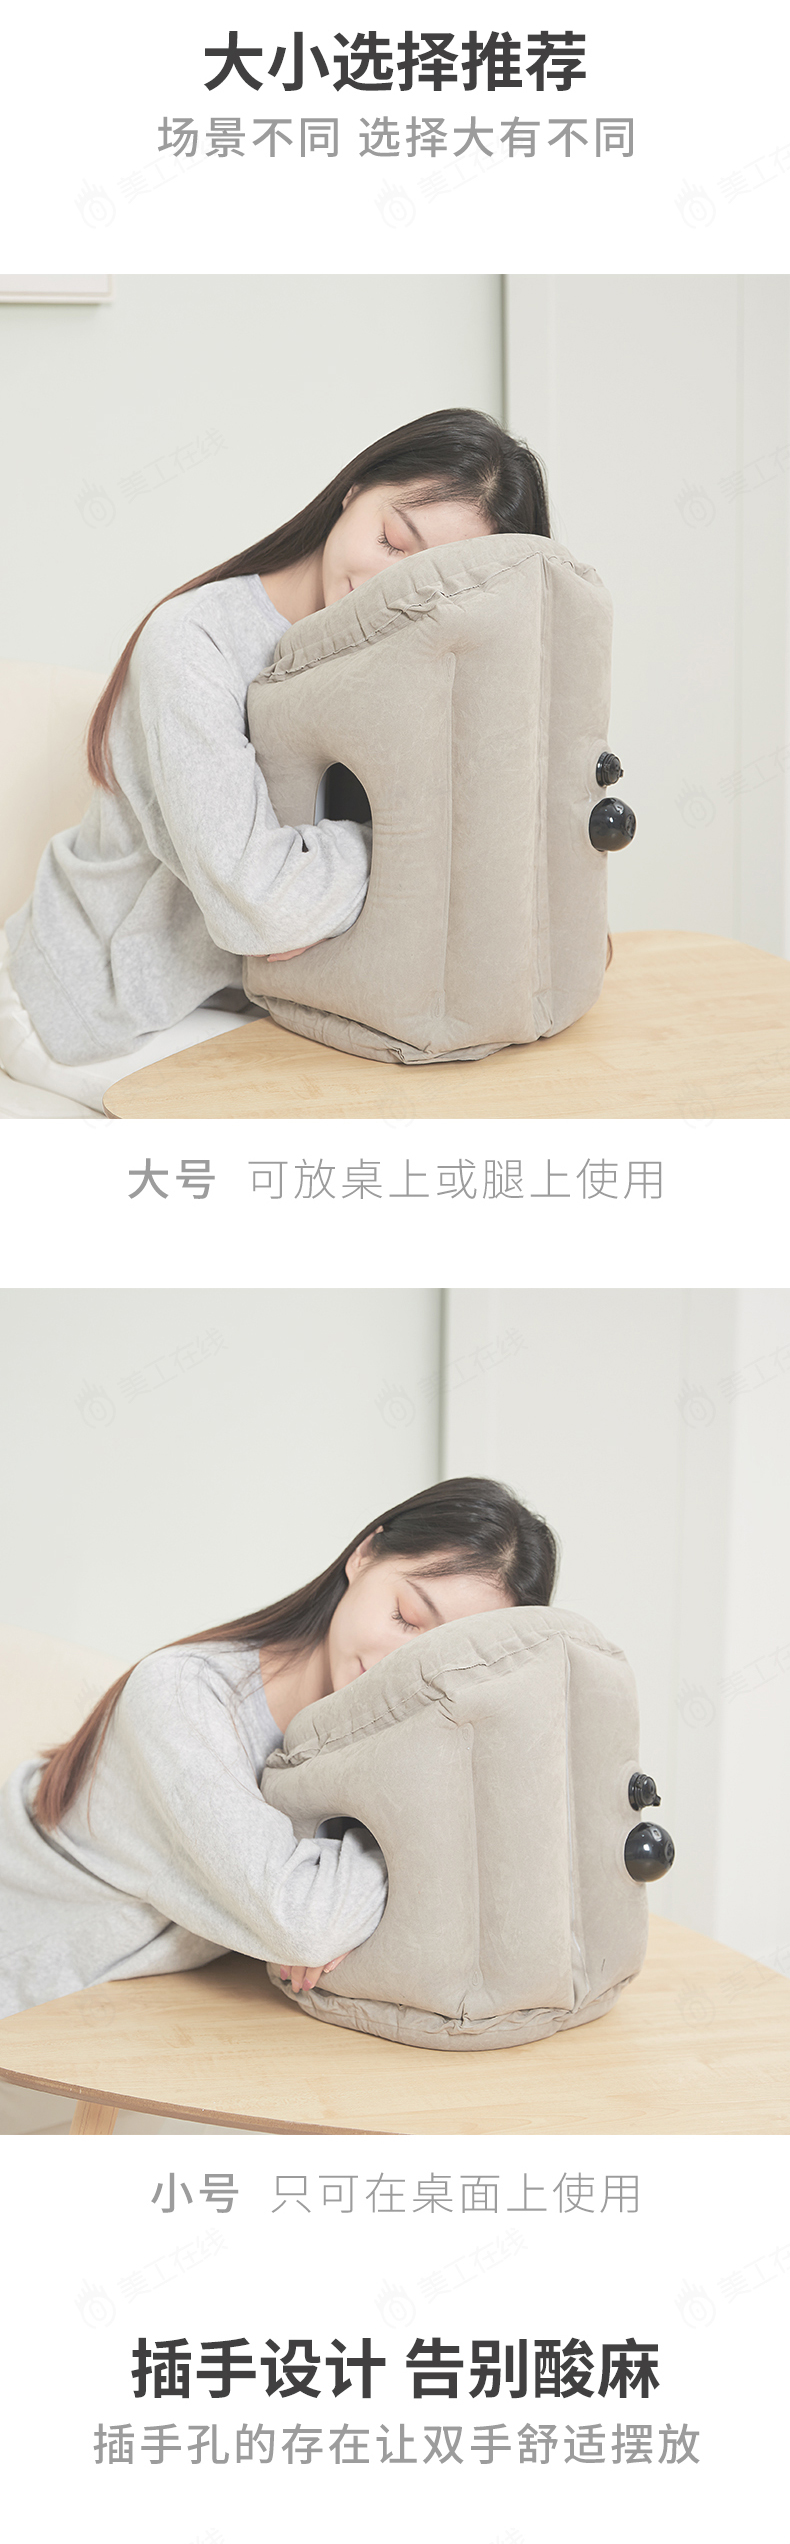 网易严选风格-充气抱枕详情设计